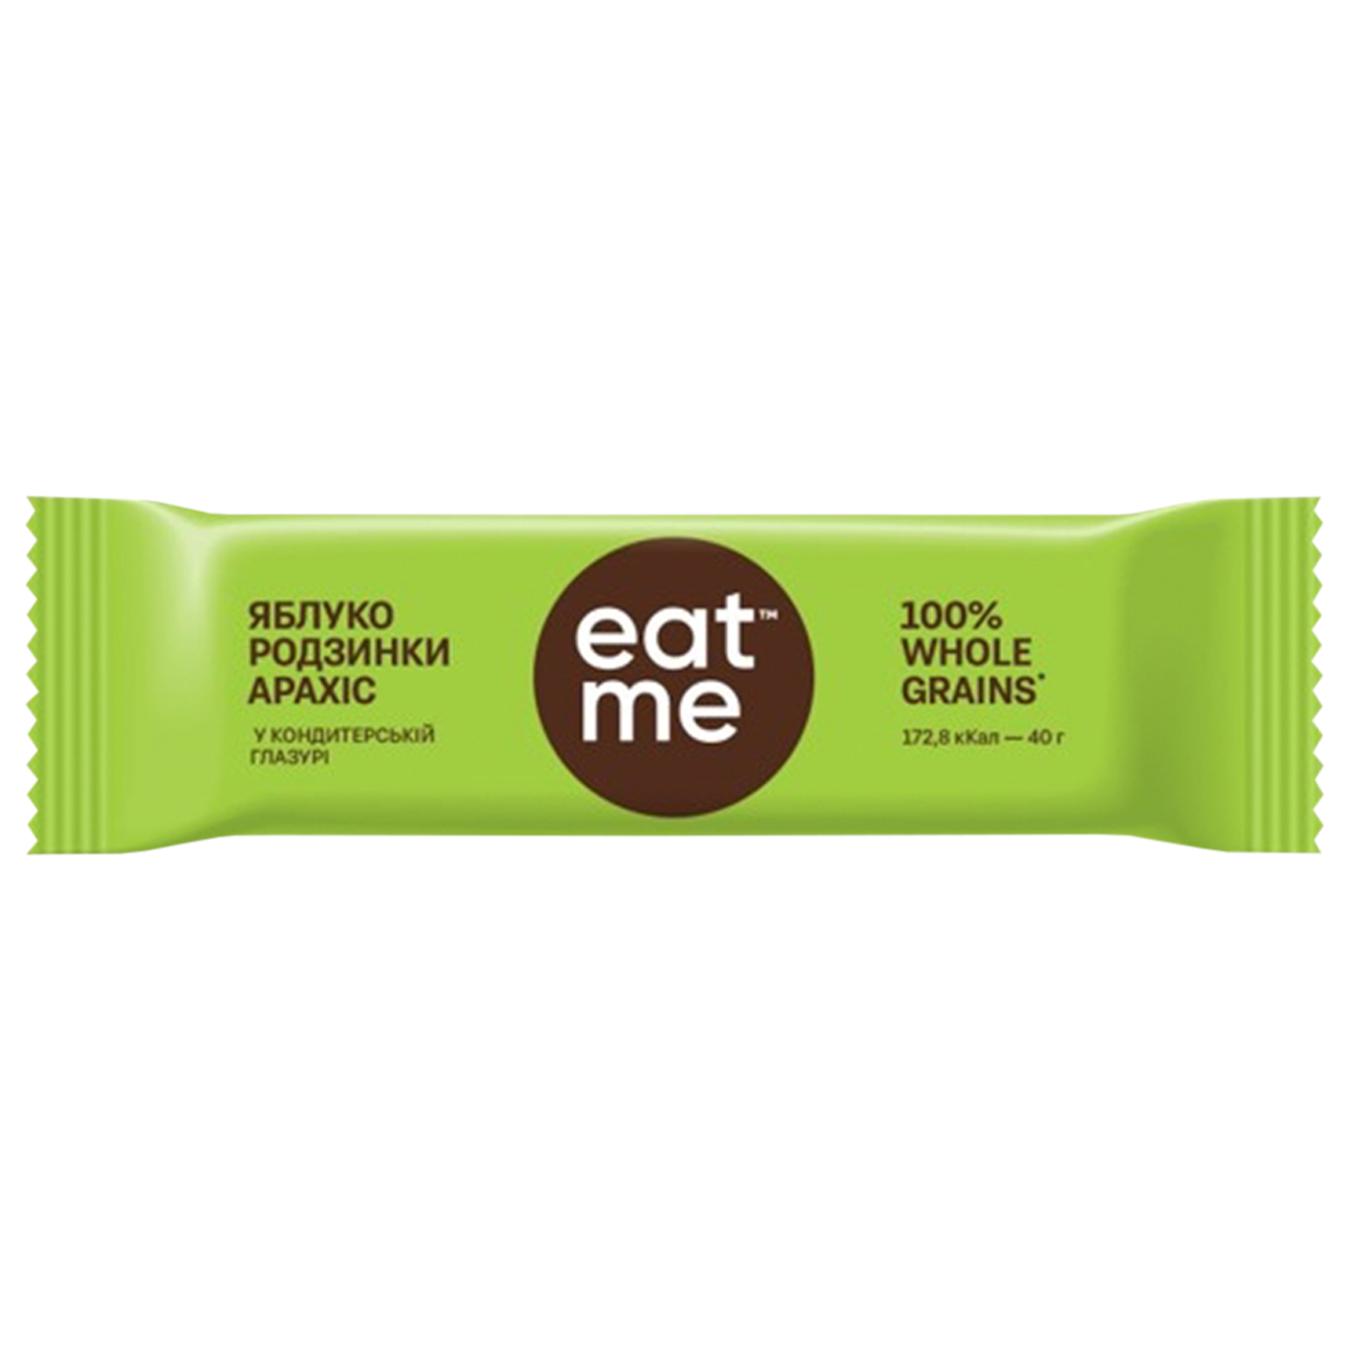 EatMe cereal raisin-apple-nut bar 40g